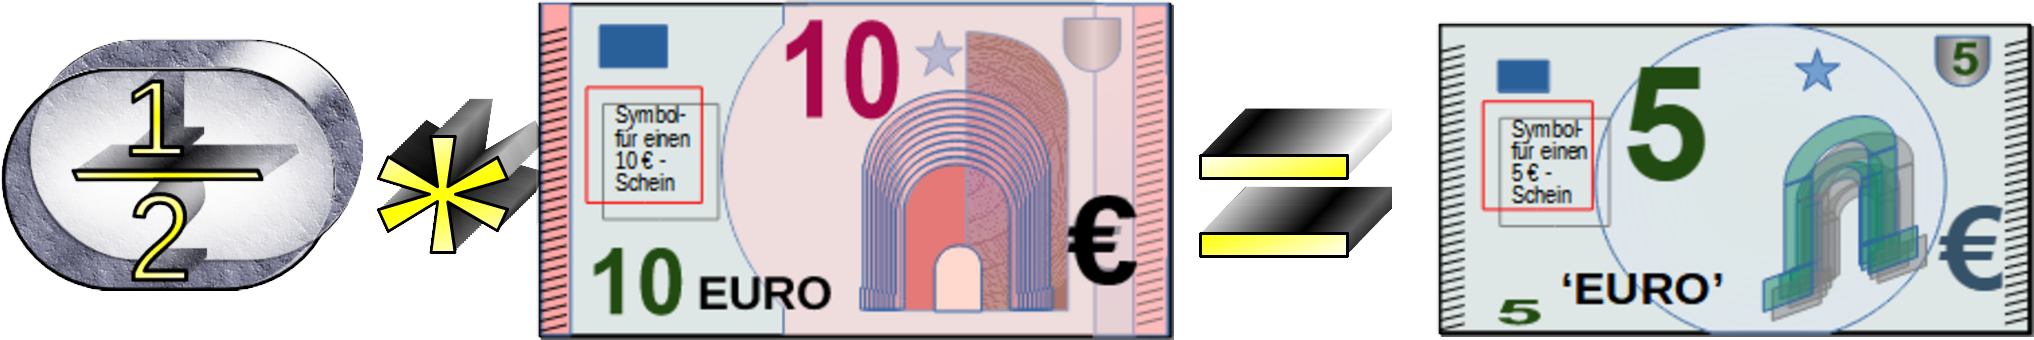 ½ mal 10 Euro = 5 Euro 